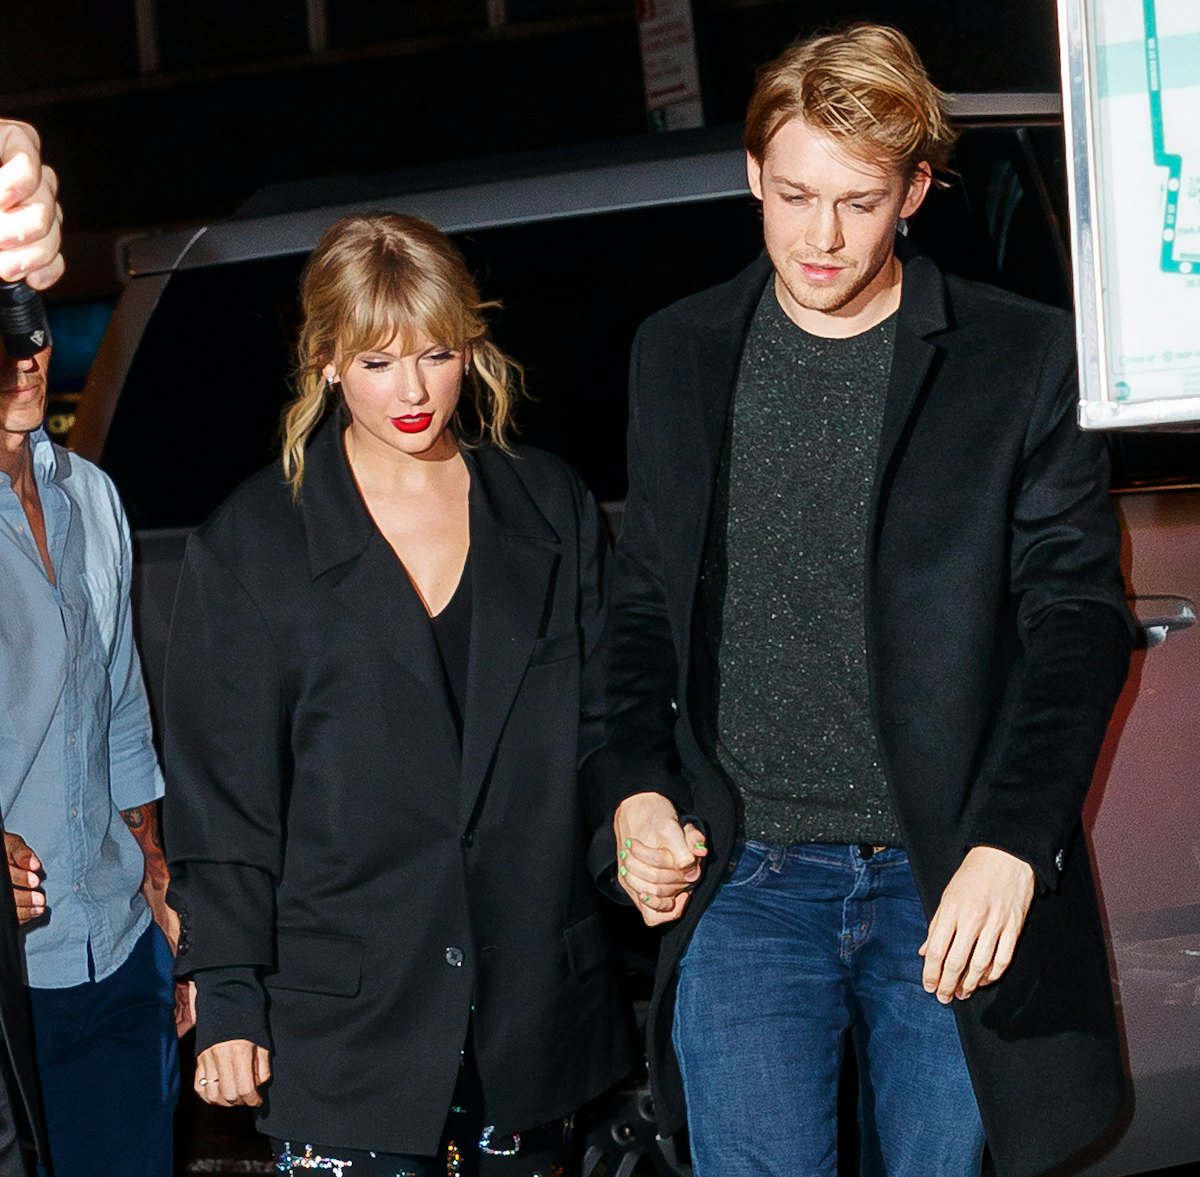 Taylor Swift revealed that boyfriend Joe Alwyn helped her write two songs on 'Folklore'